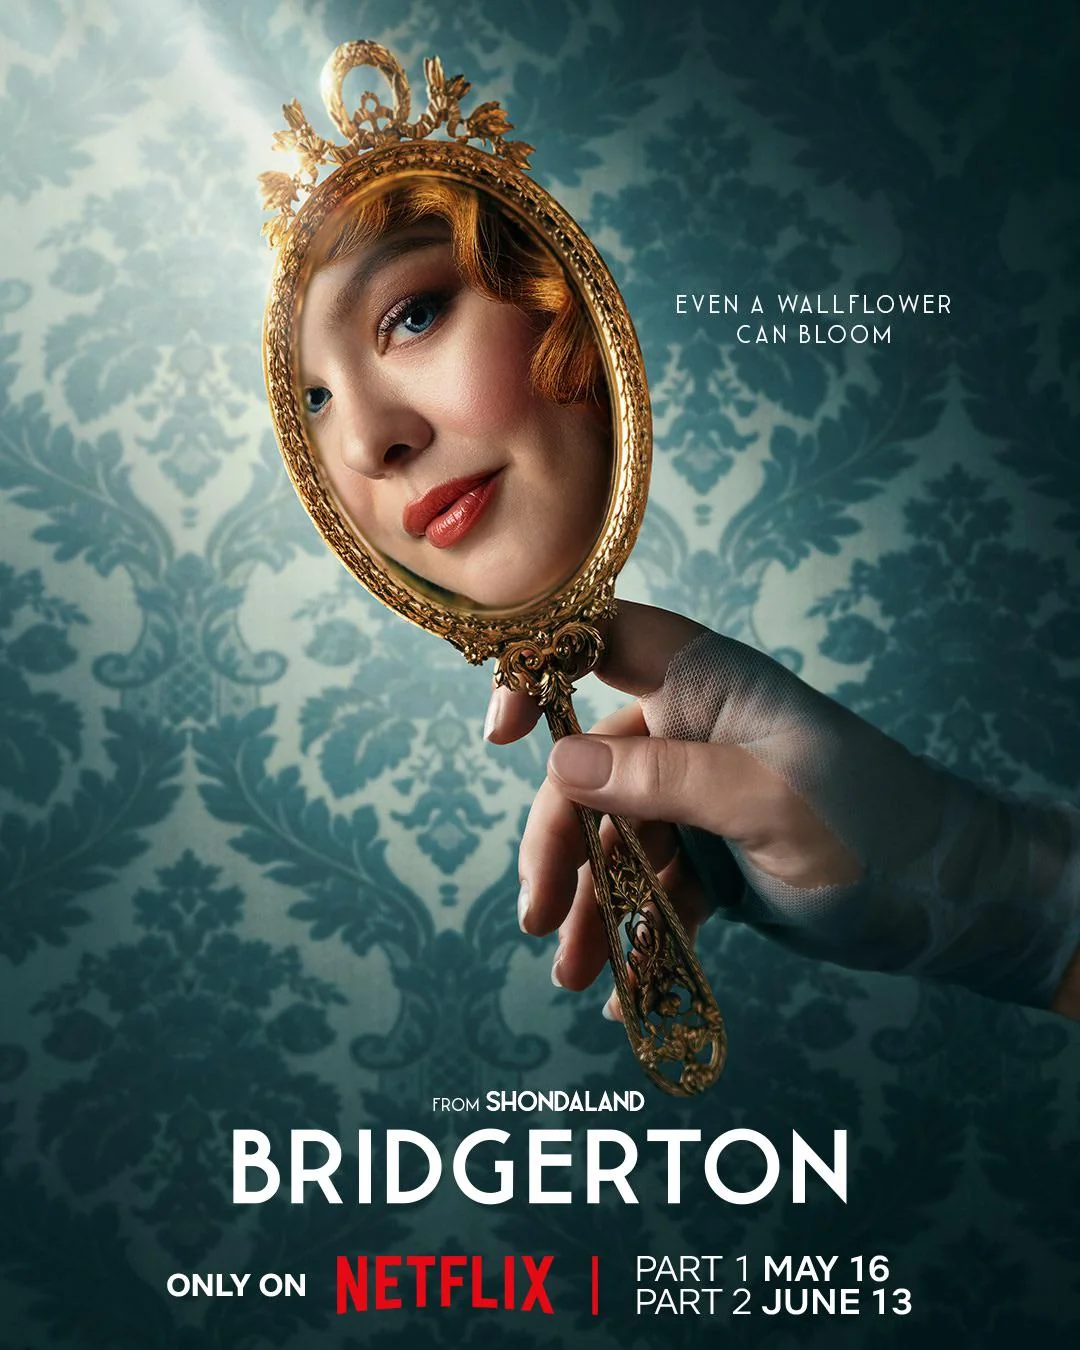 Part 1 of 'Bridgerton' Season 3 arrives on Netflix May 16